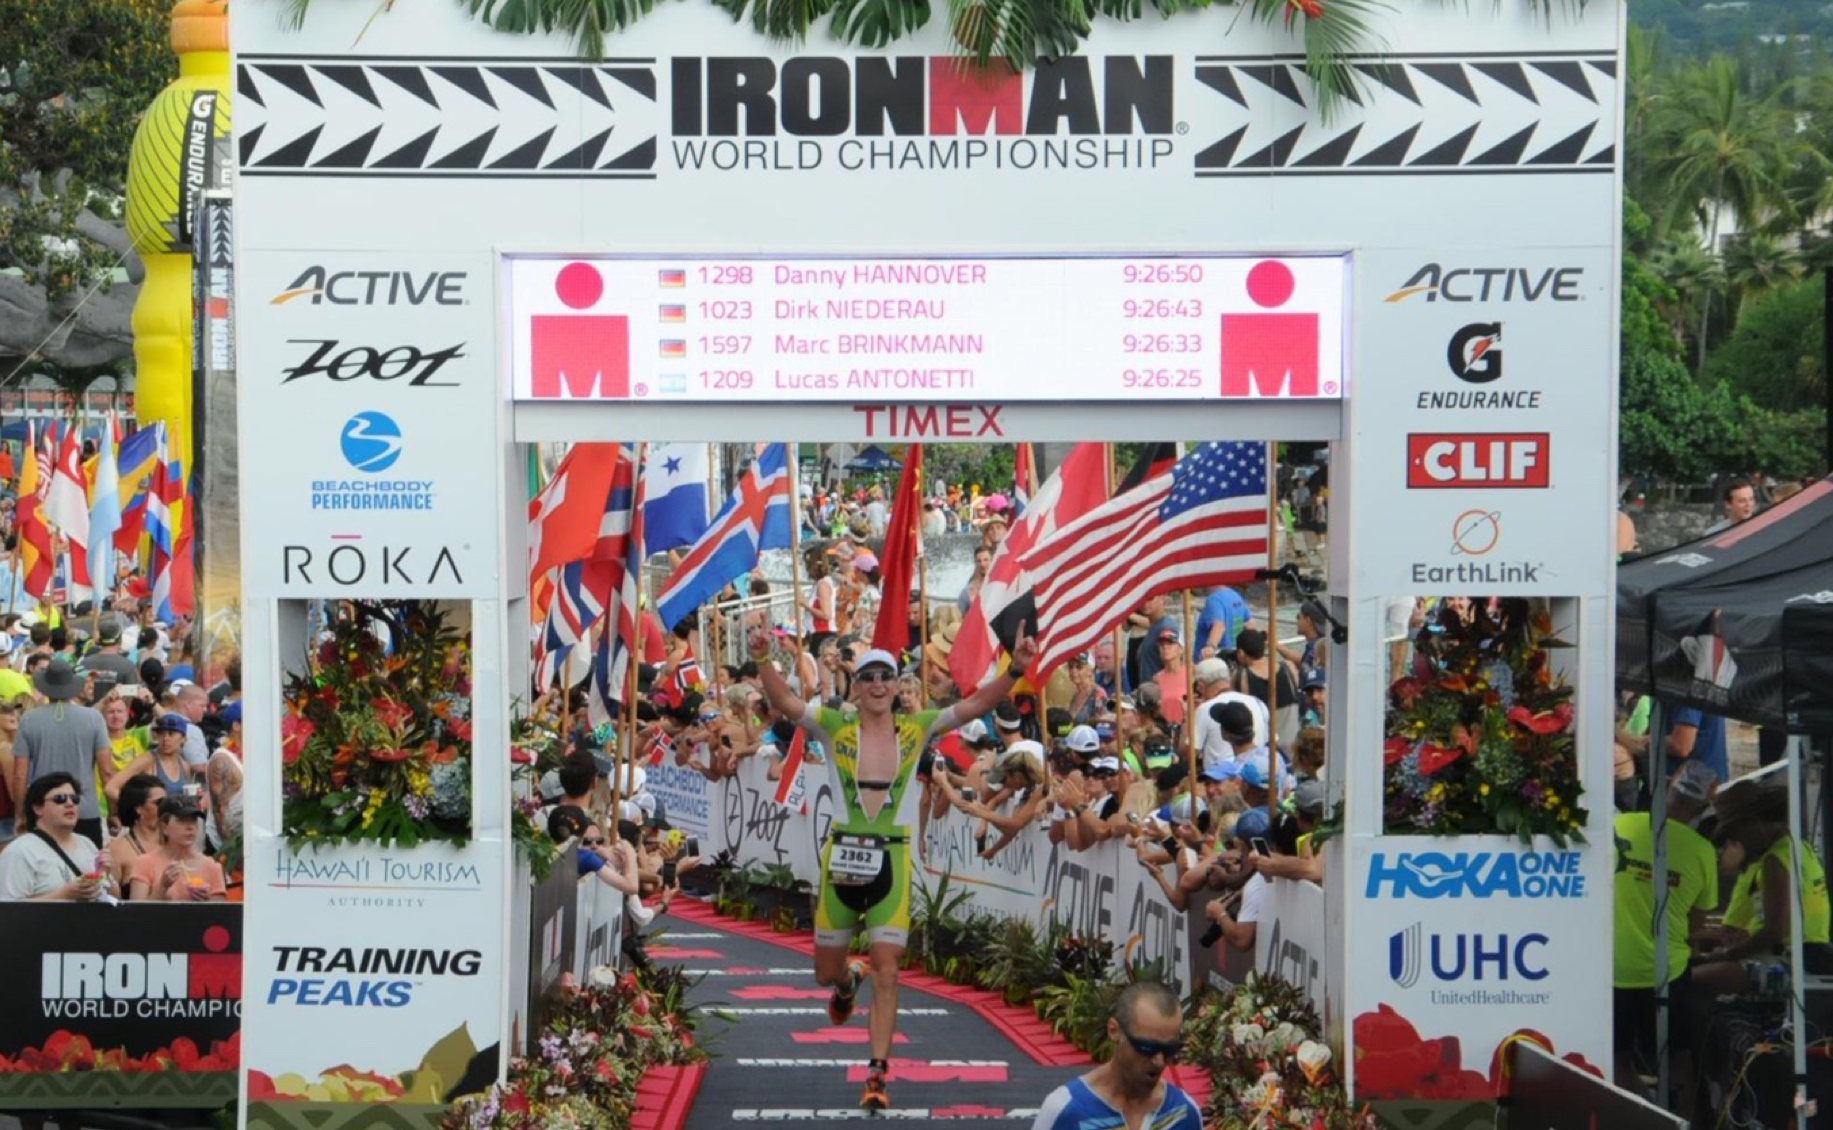 Ironman World Championship - Oppskrift på seier